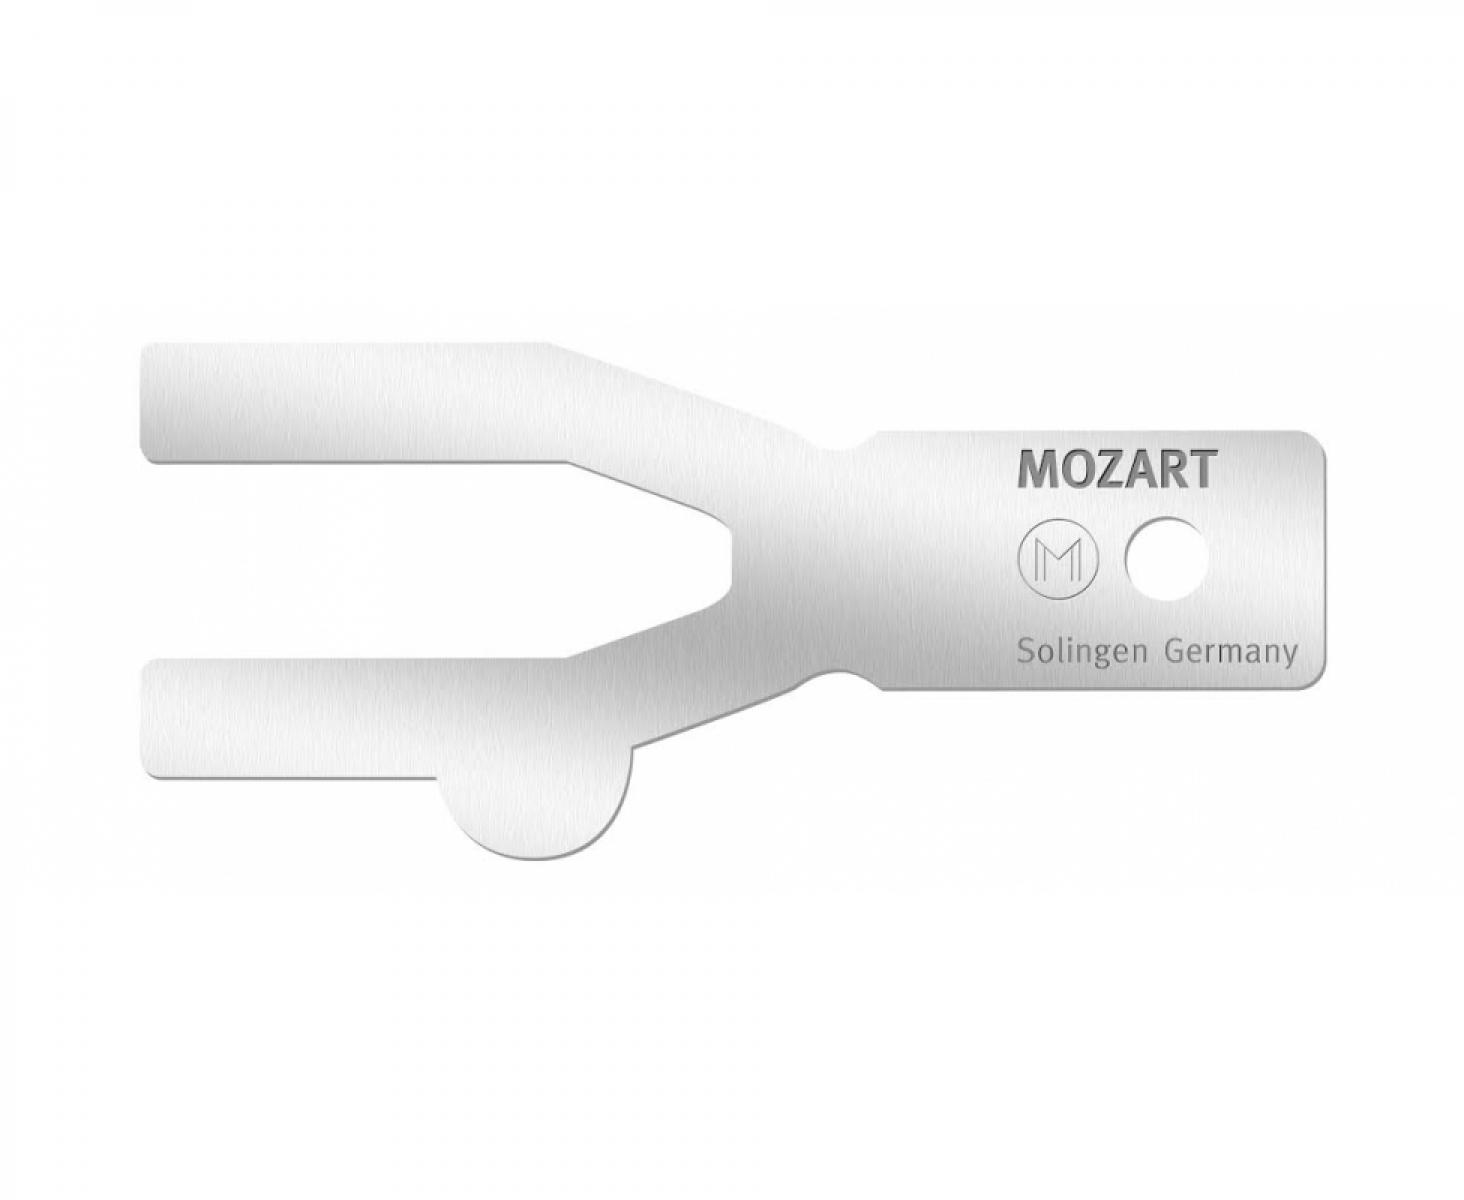 Направляющая для ножа Mozart 0,5 мм 8679.000-2885